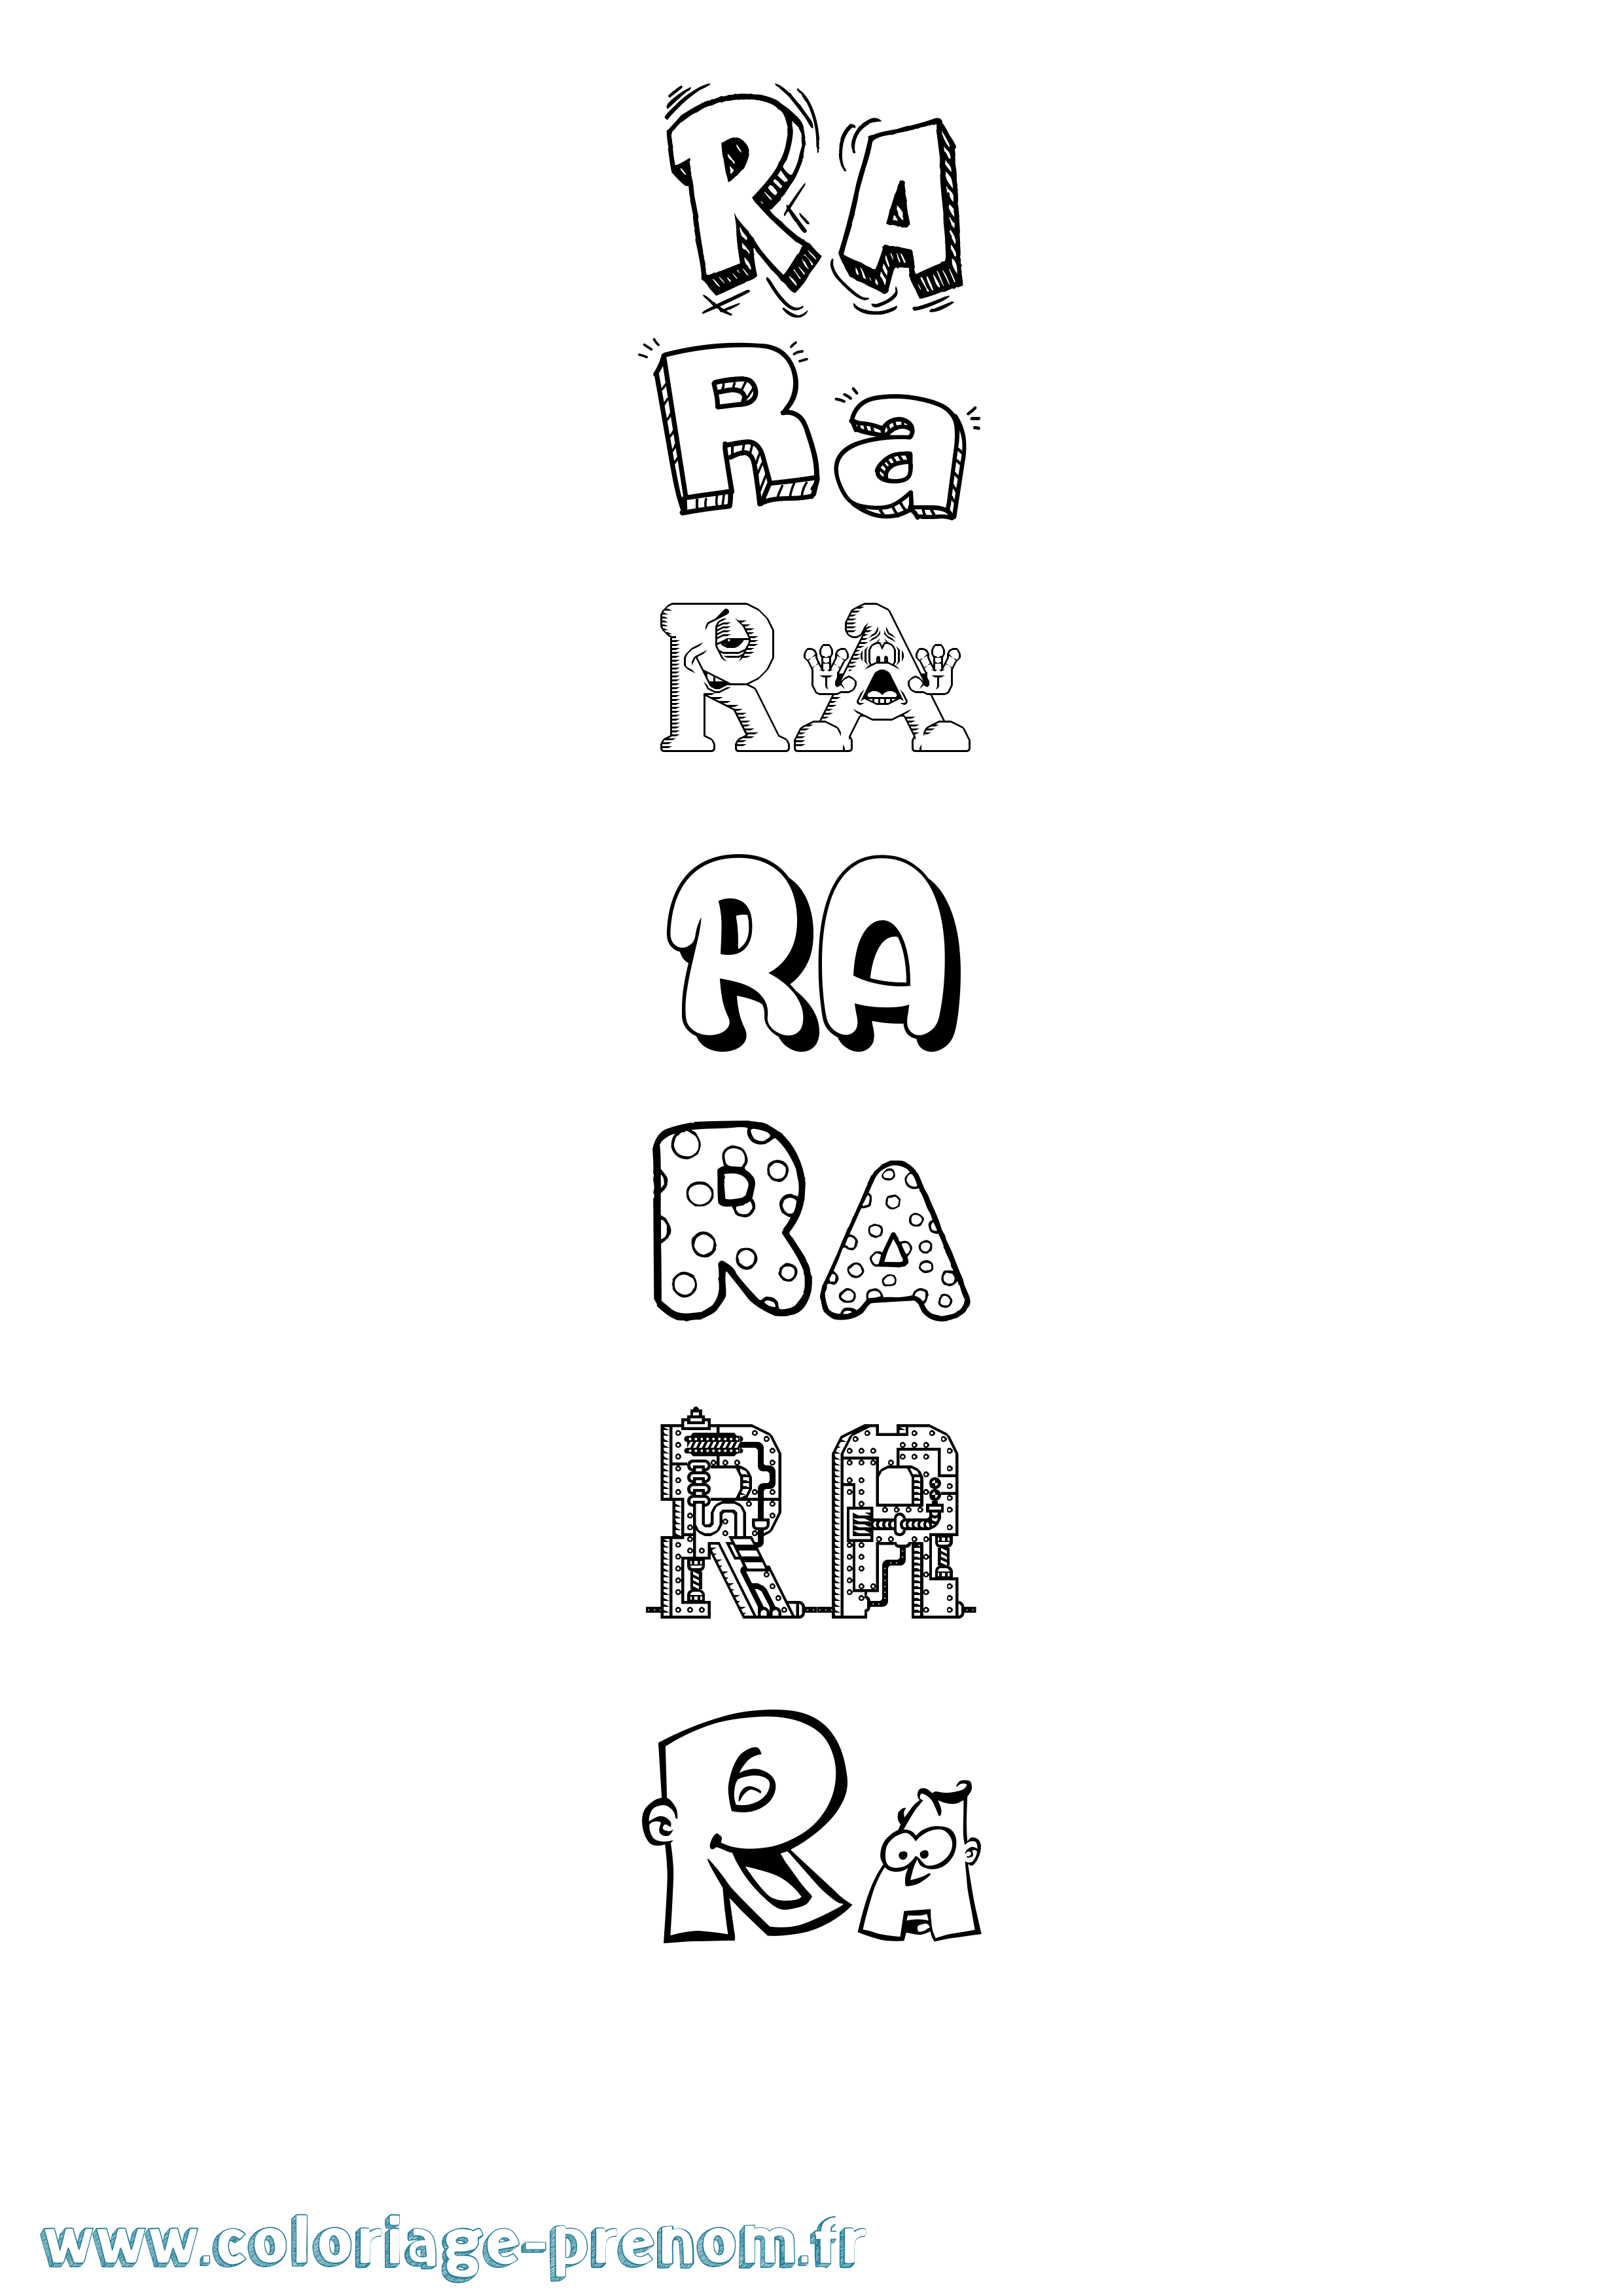 Coloriage prénom Ra Fun